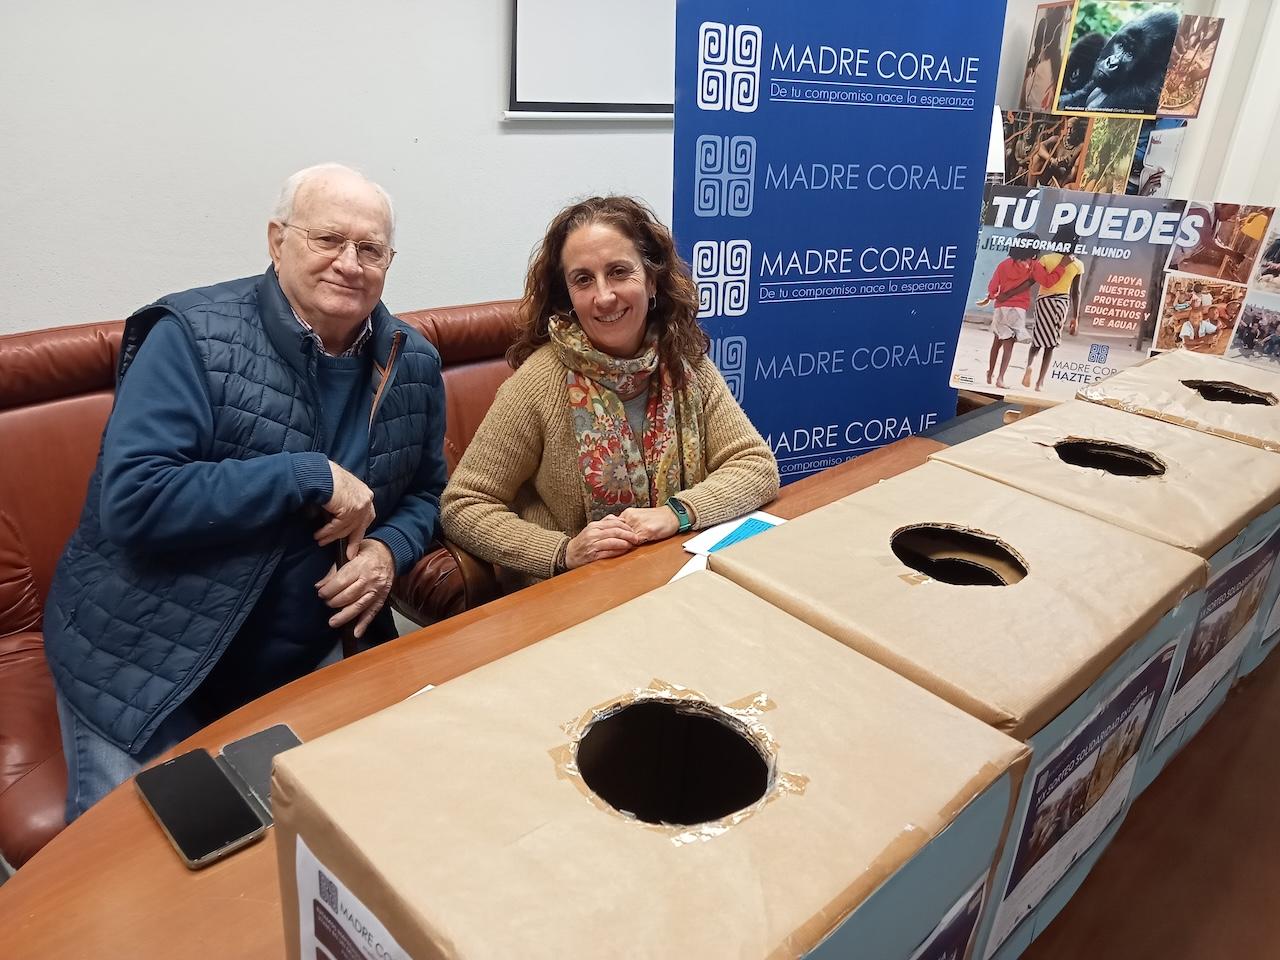 El XX Sorteo Solidaridad en Escena de Madre Coraje reparte sus premios entre Vasyma, de Jerez, y voluntarios de la entidad